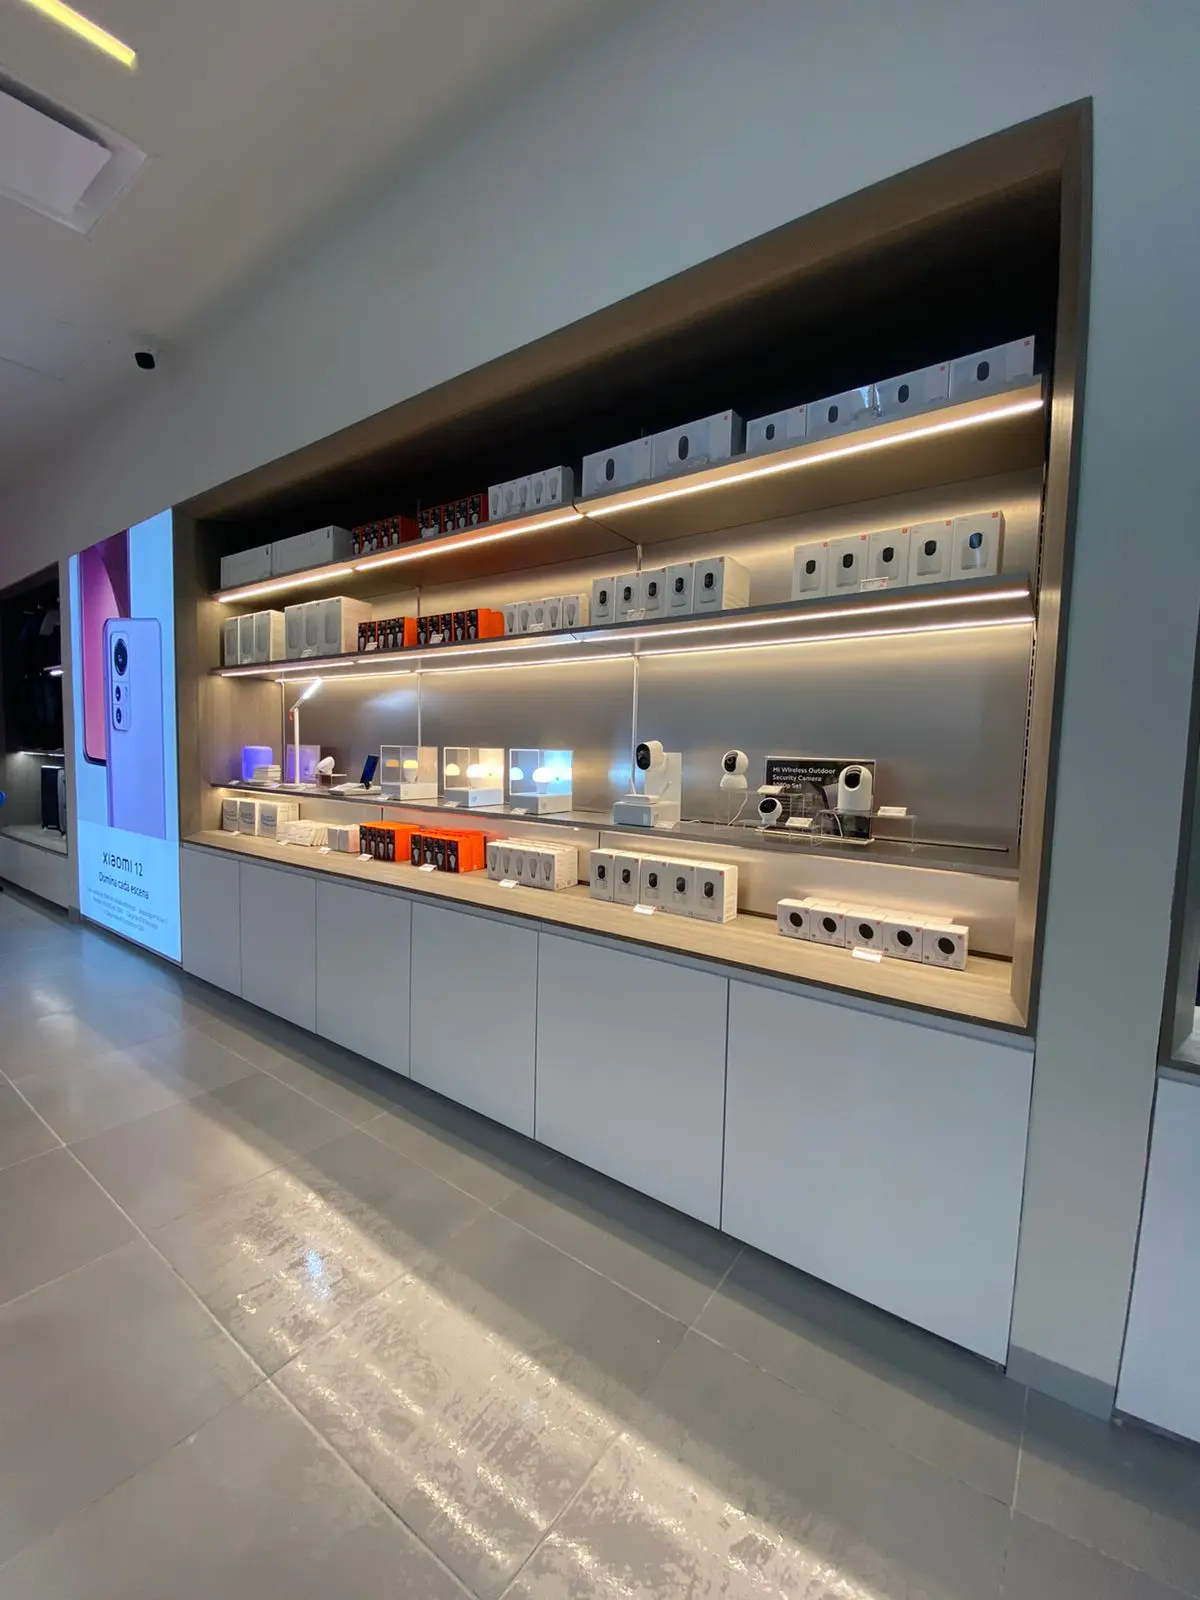 Xiaomi se expande en México: abre una nueva tienda física en Oceanía